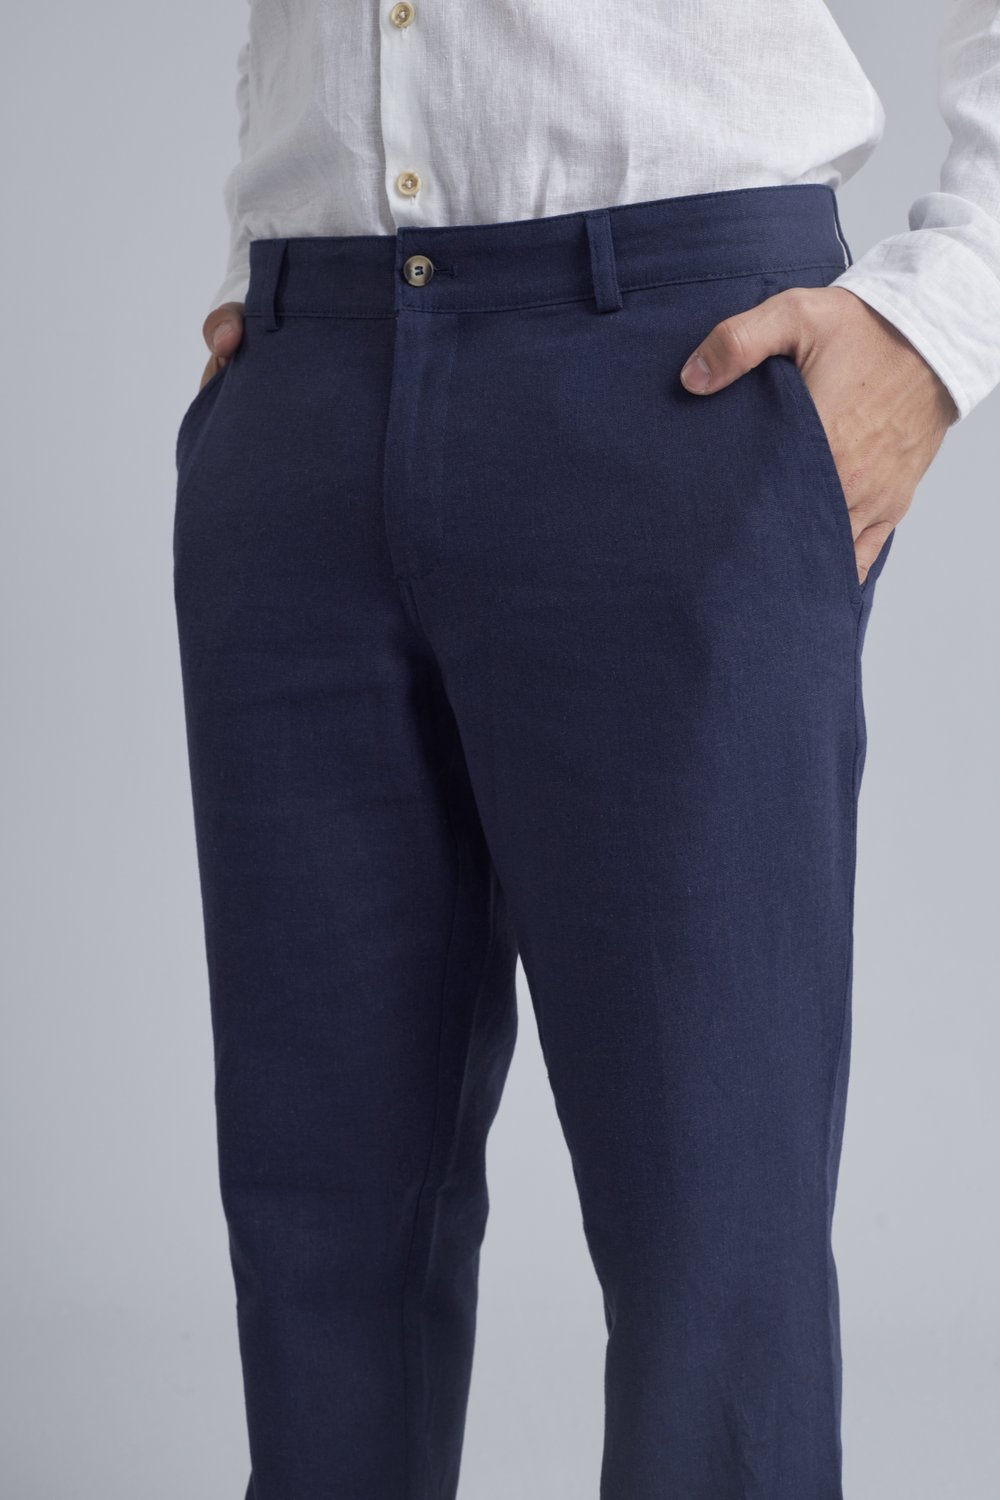 Calça Casual Masculina em Linho Azul Marinho - Delucca Clássico, calças  homem 